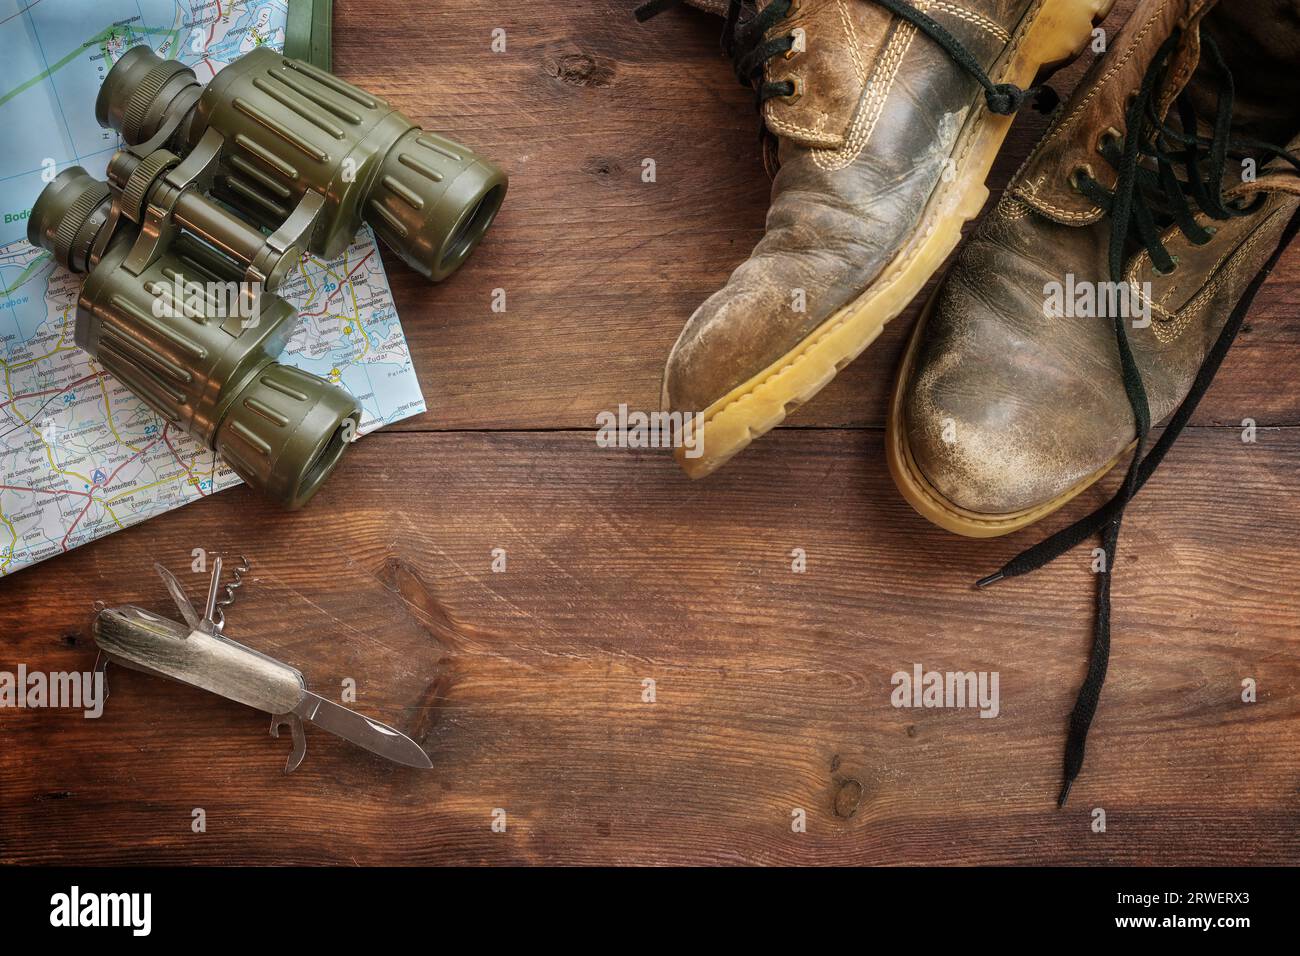 Alte Lederstiefel, Fernglas, Karte und Taschenmesser auf dunklem rustikalem Holz, Konzept für Reise-, Wander- und Abenteuerurlaub, Hochwinkel-Blick Stockfoto